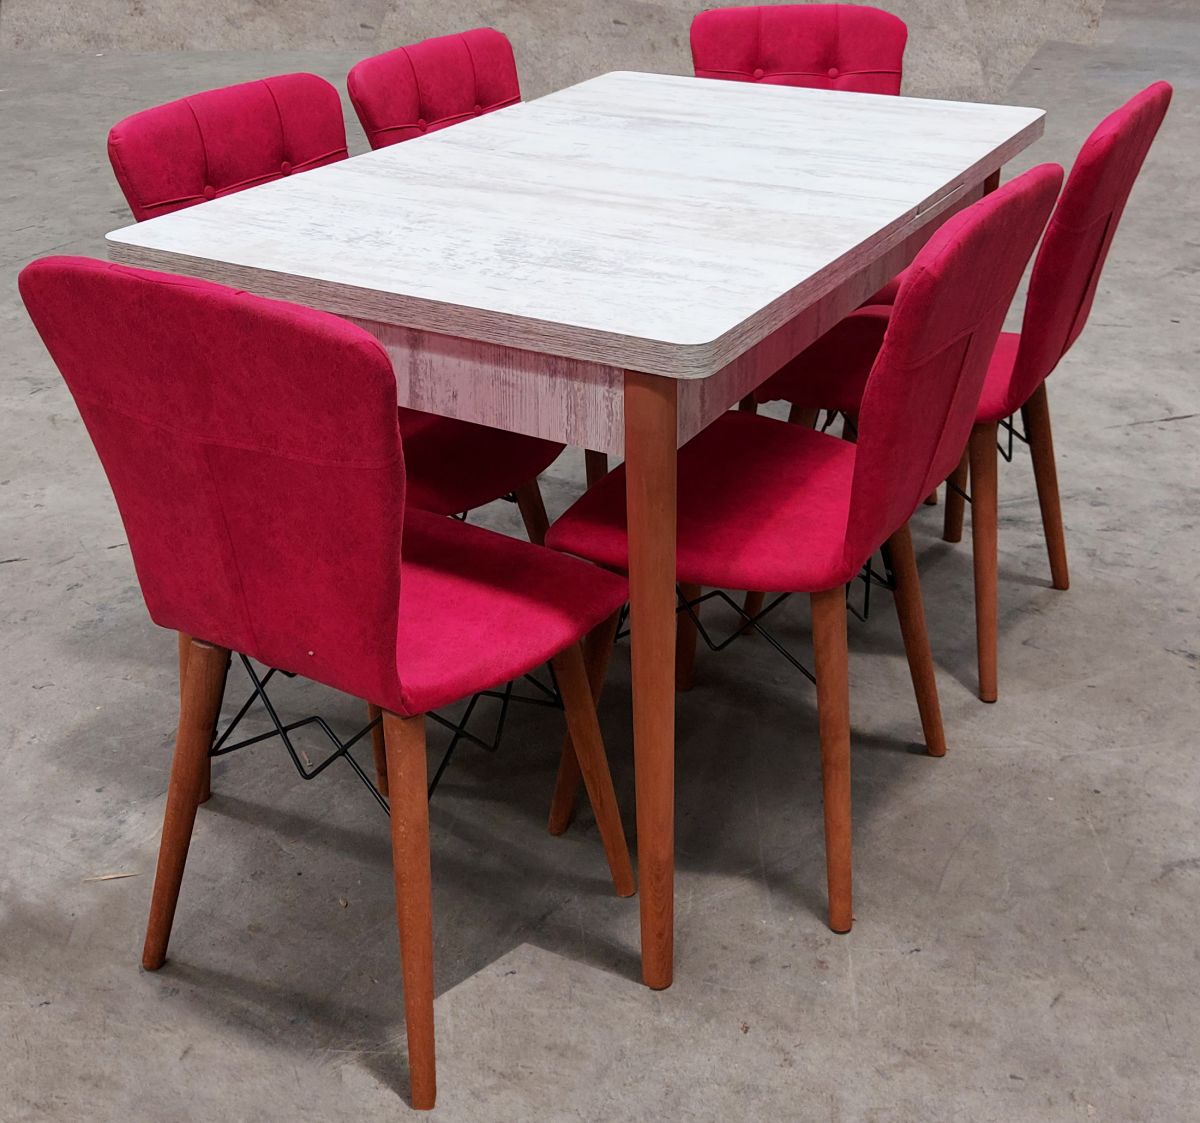 Set masa extensibila cu 6 scaune tapitate Homs cristal alb-rosu170 x 80 cm